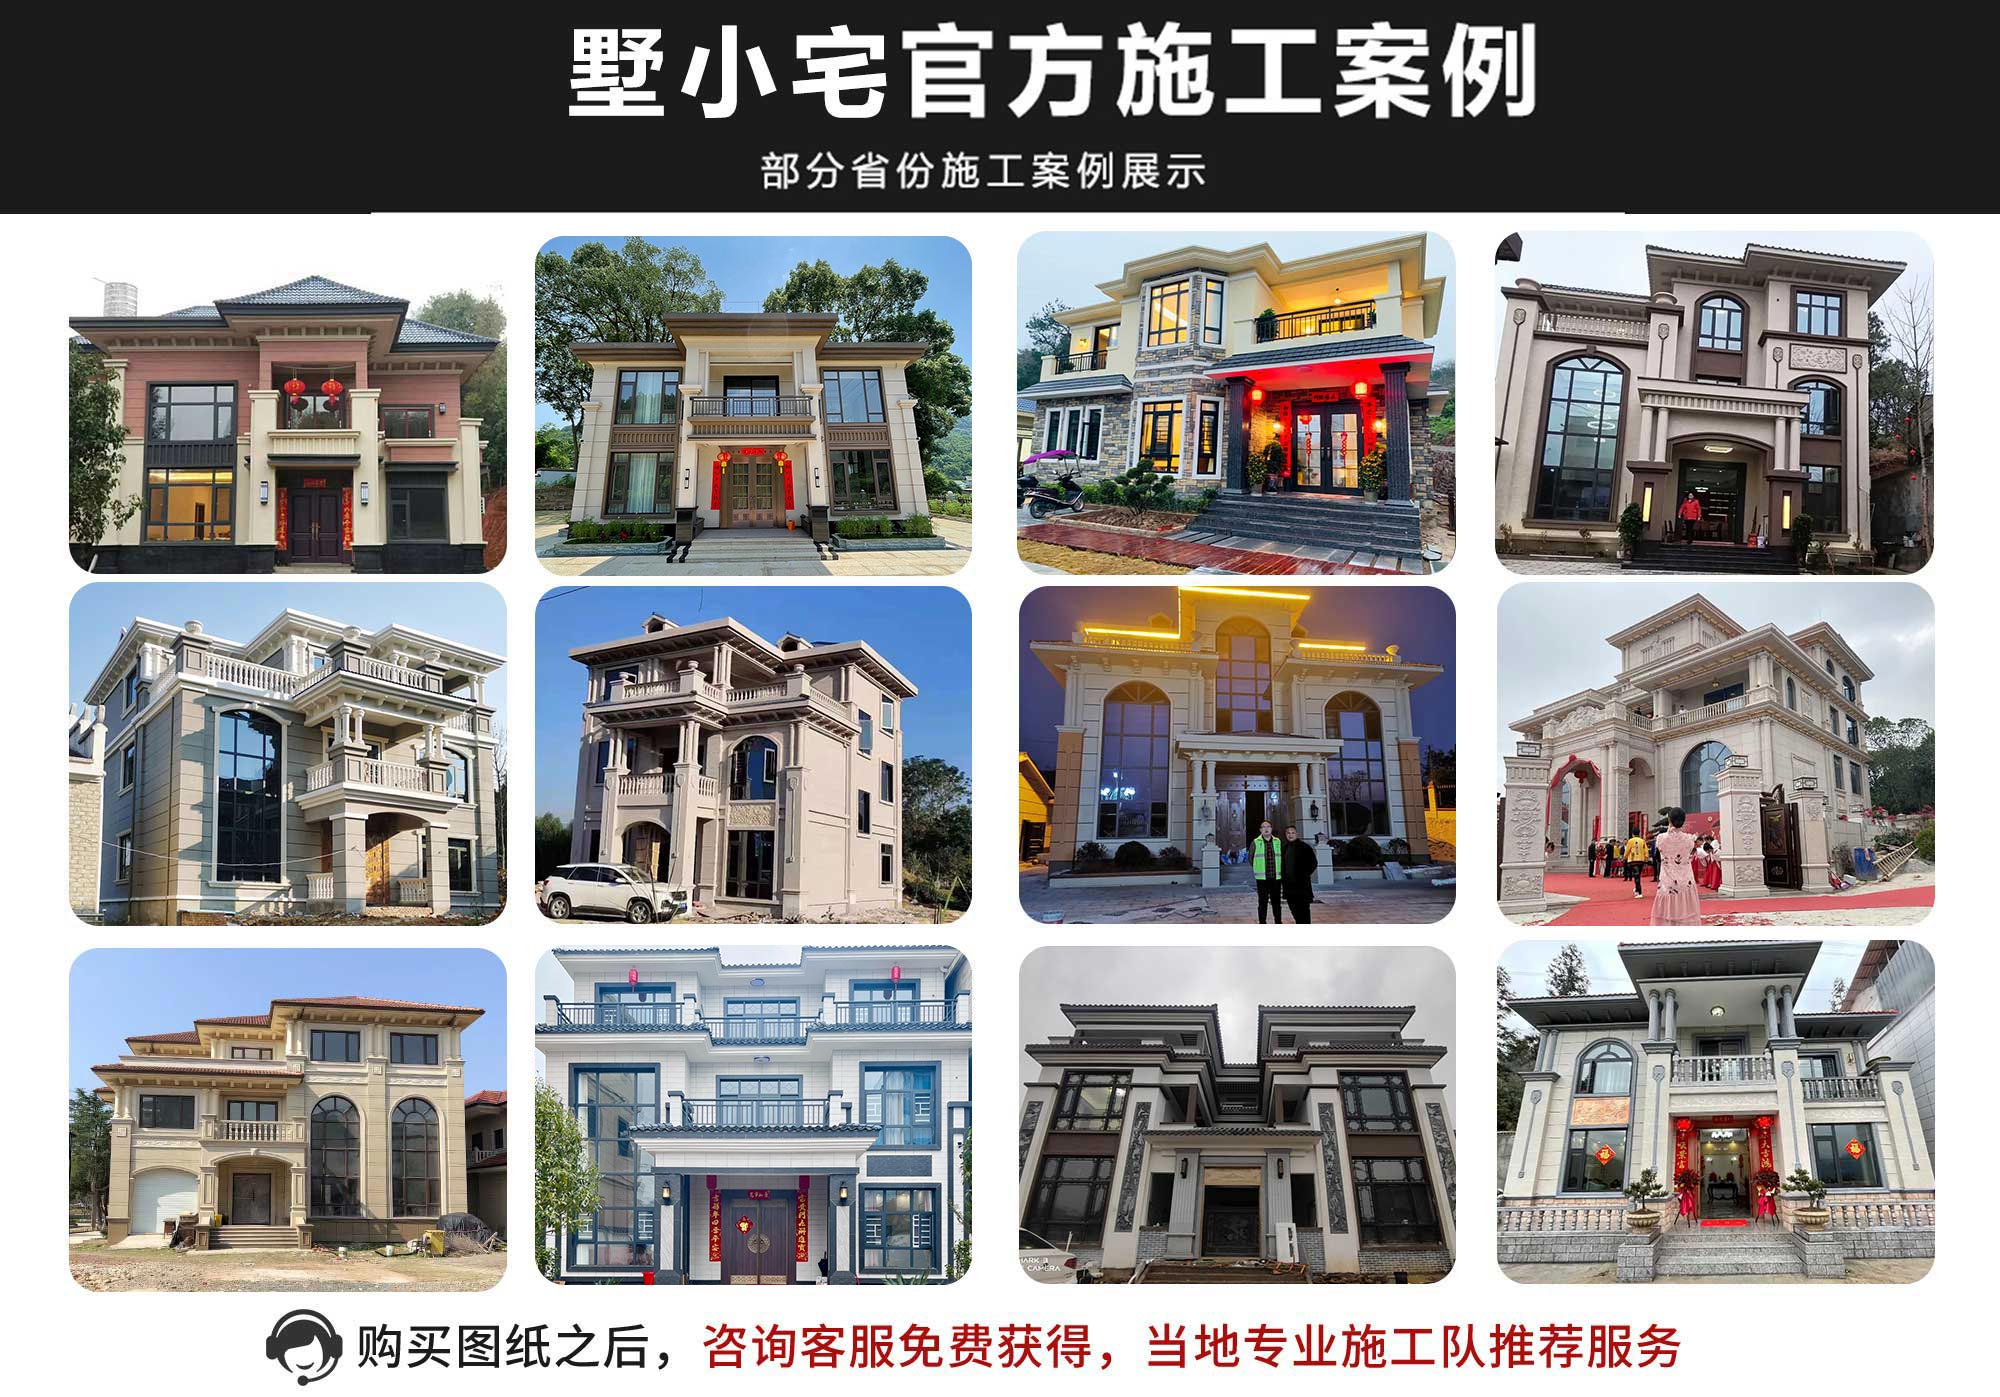 B859两层农村自建中式北京四合院别墅设计图纸，白墙黛瓦的江南风格20×18.5